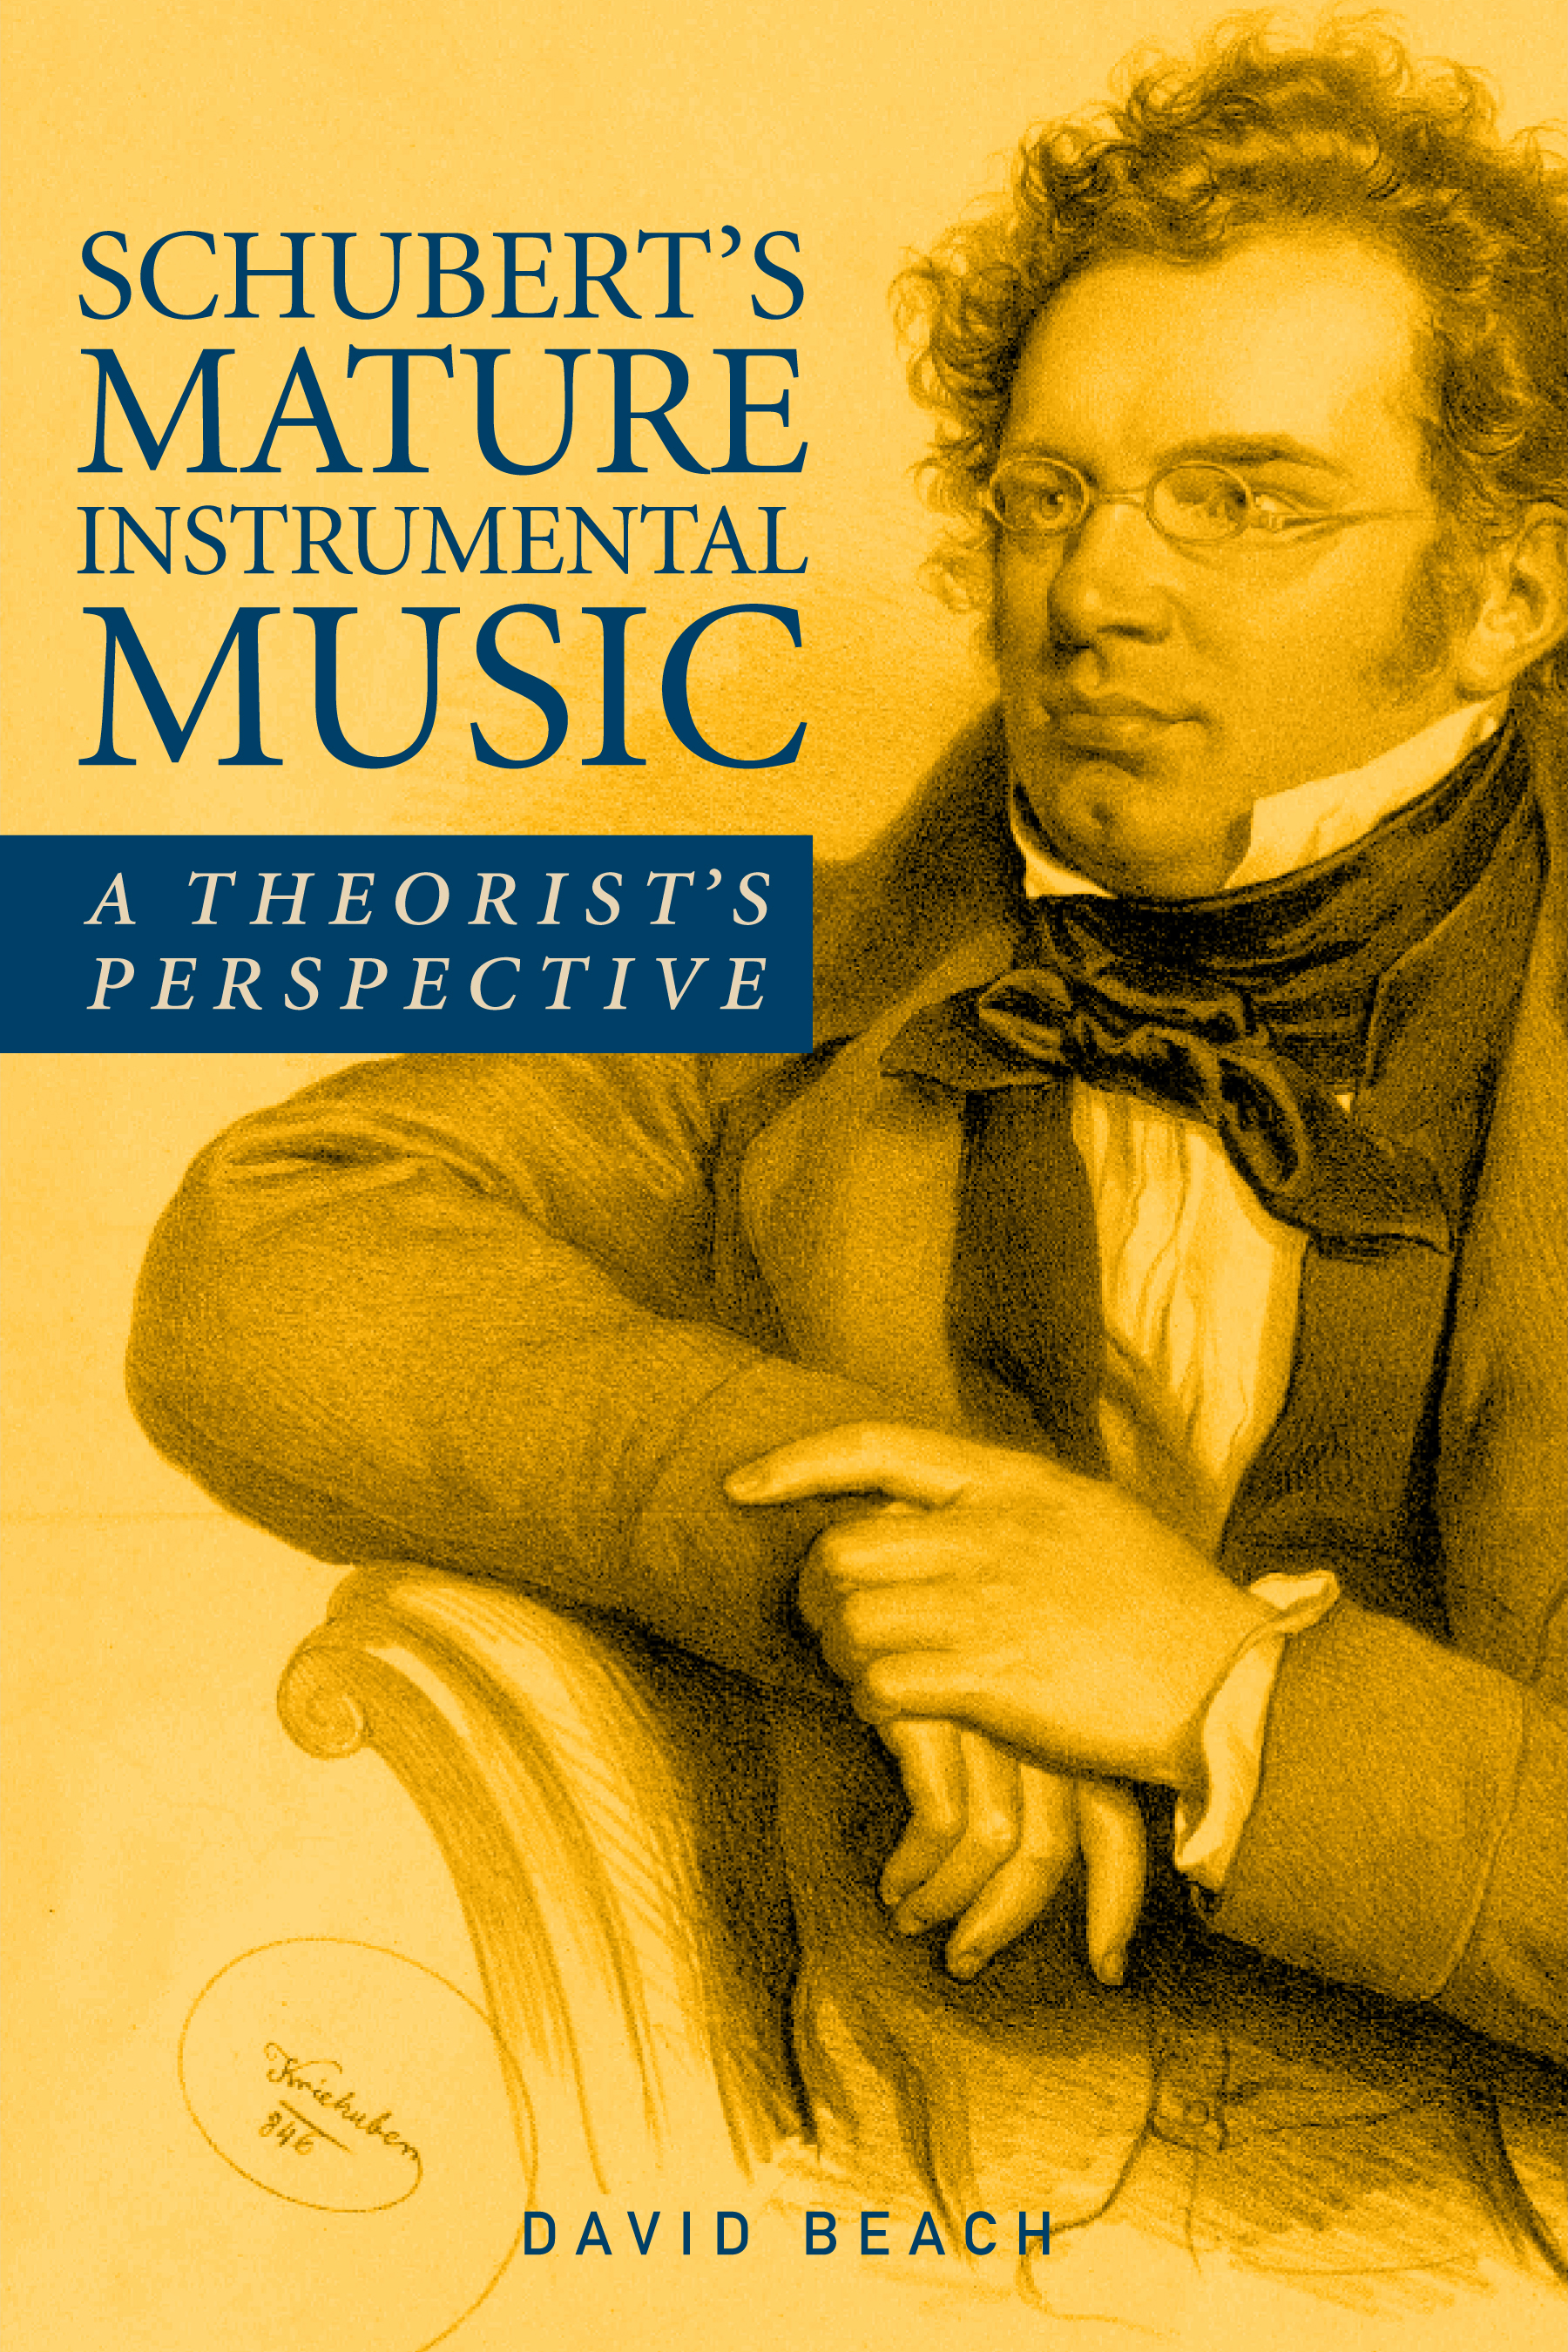 Schubert's Mature Instrumental Music